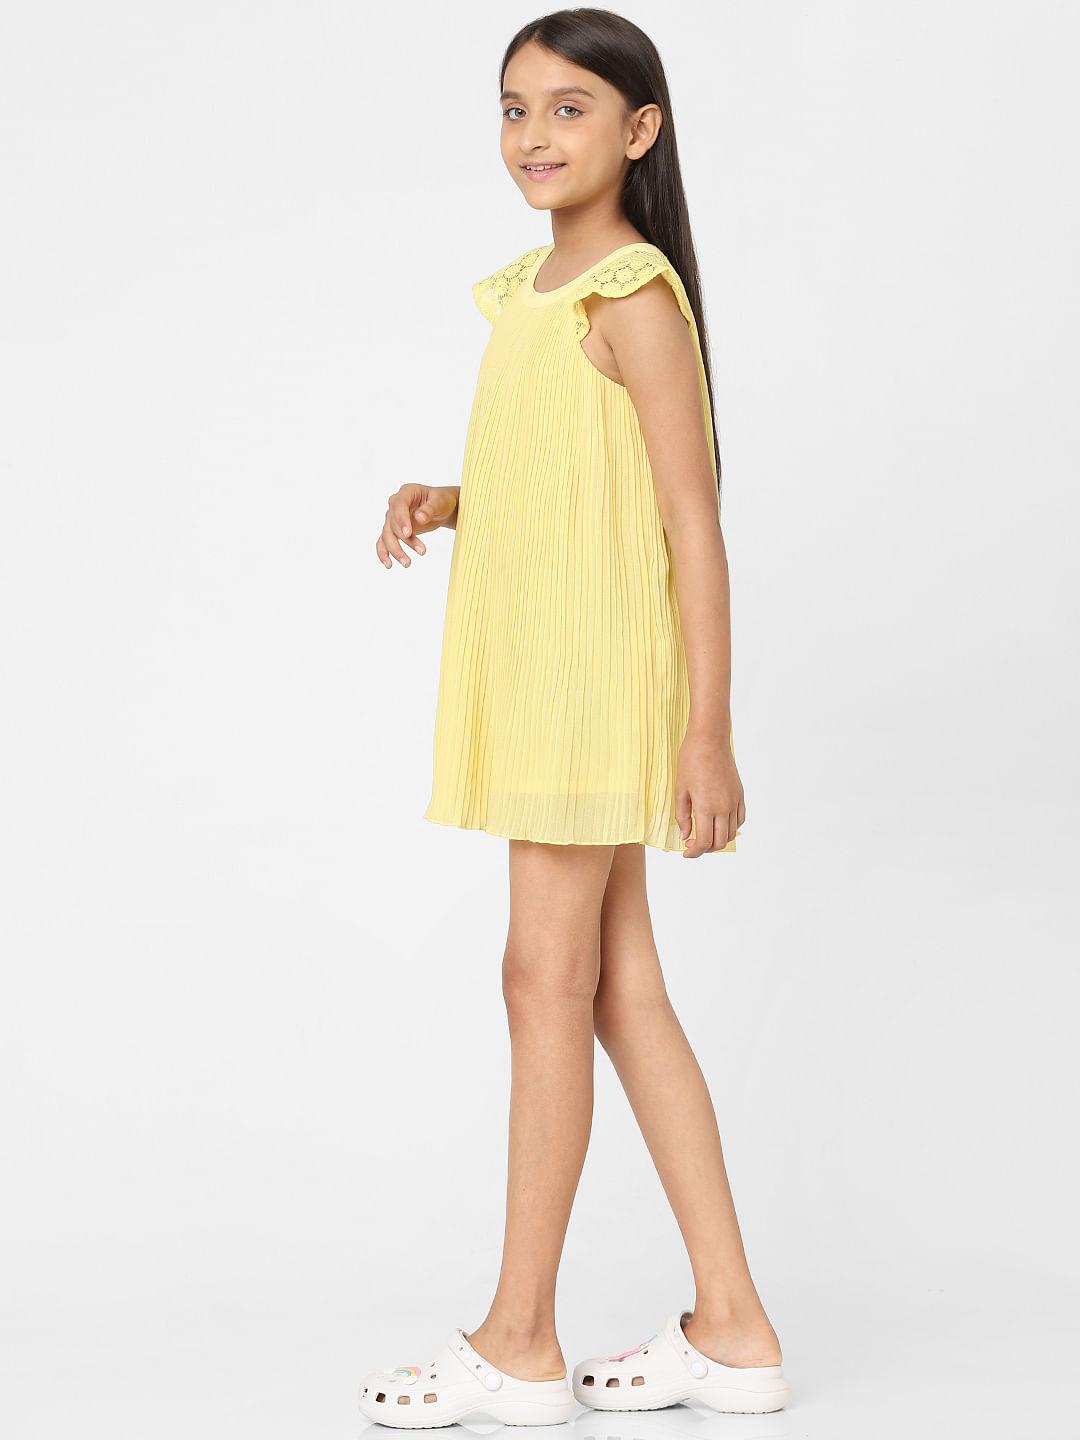 2023 Korea Summer Children One-piece Dress Girl Princess Dress Kids Party Girls  Dress Kids Girl Fashion Clothing Girls Dress